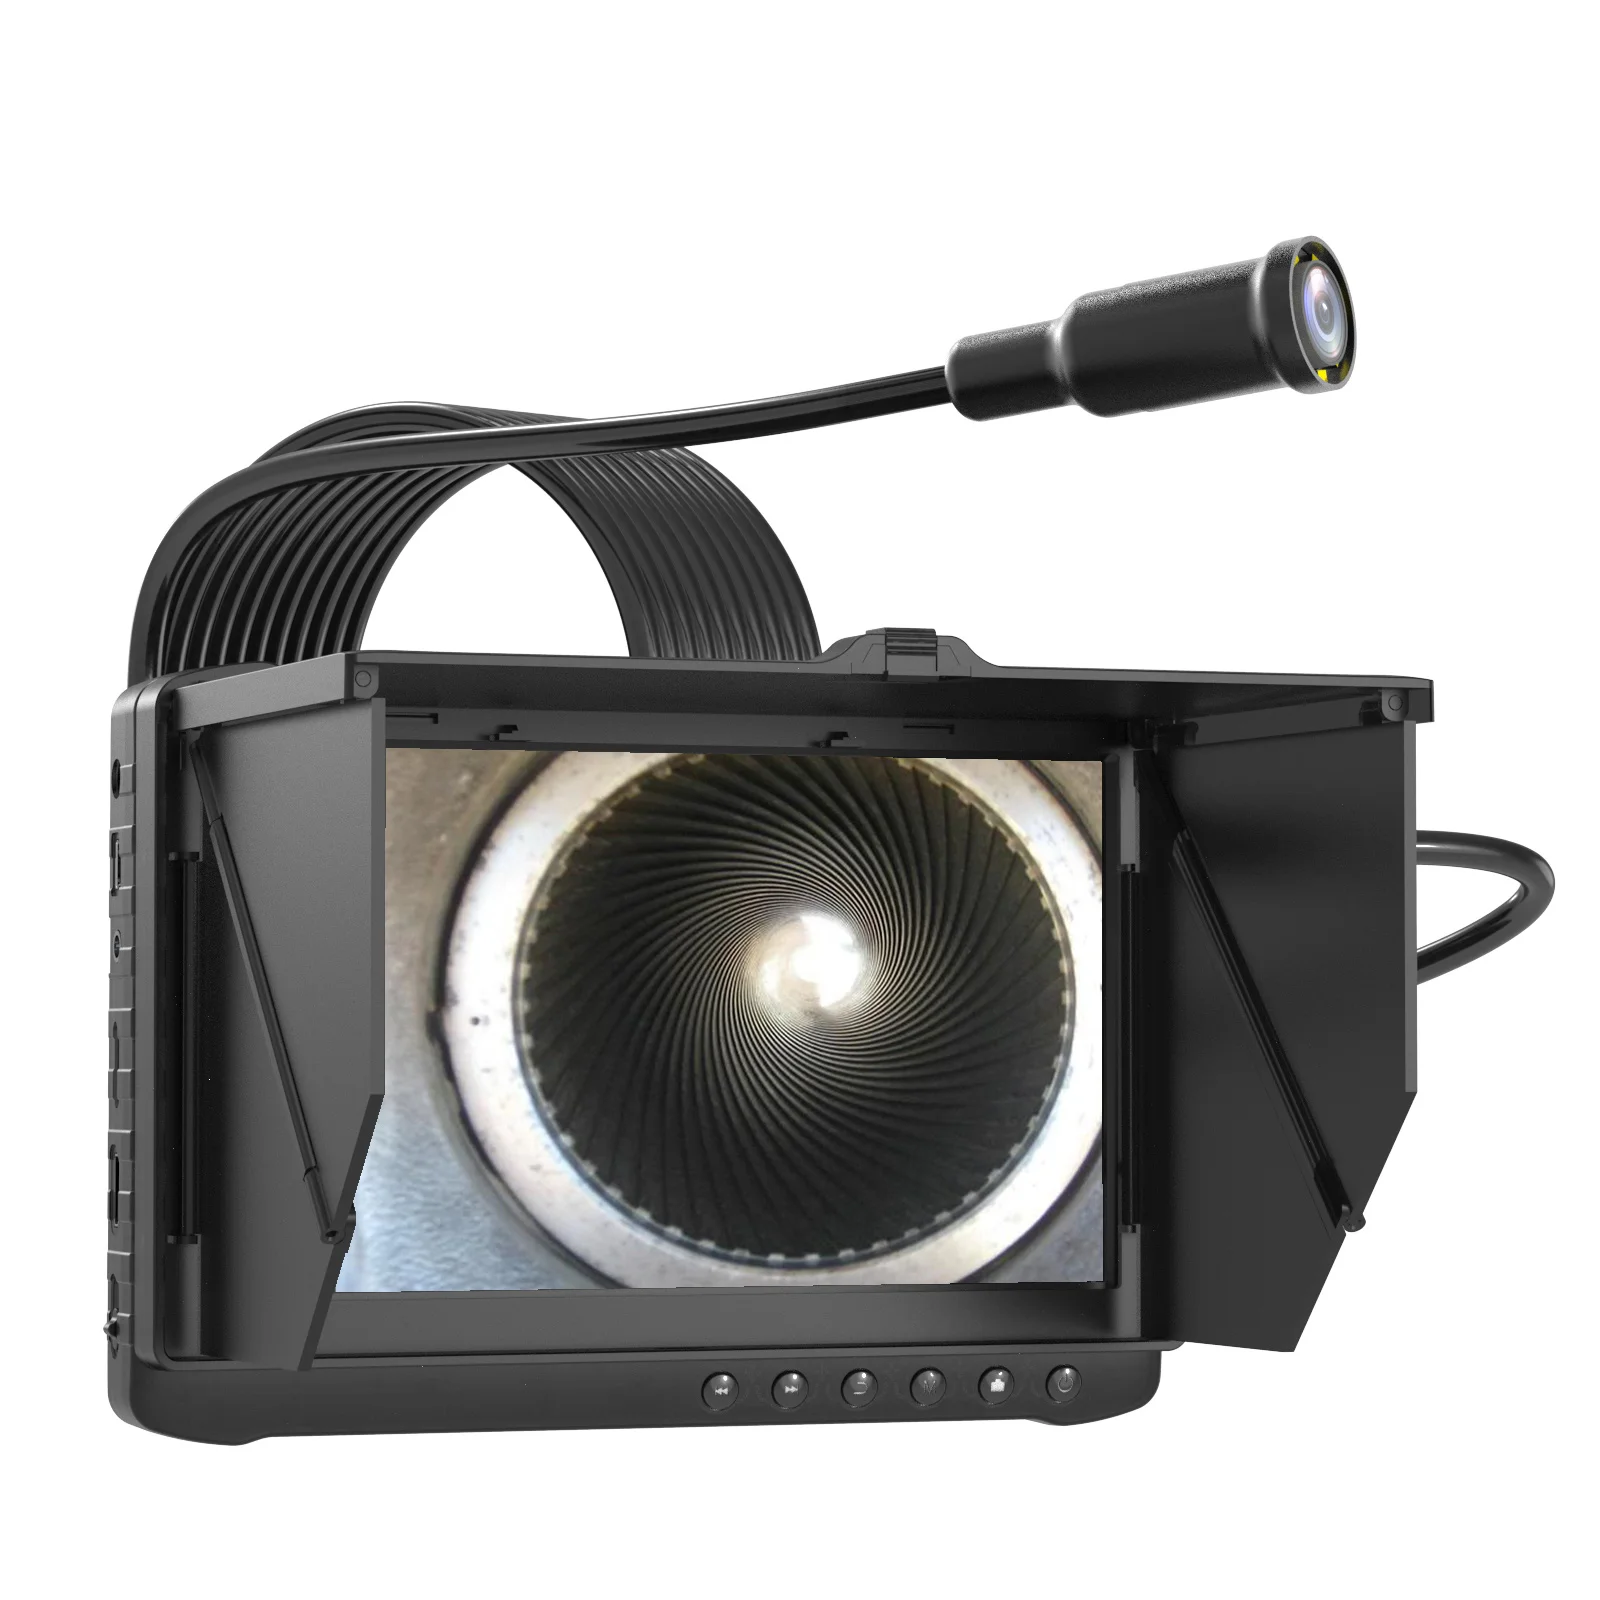 

Водонепроницаемая промышленная камера-эндоскоп IP68 для осмотра труб, экран 7 дюймов, Фотокамера